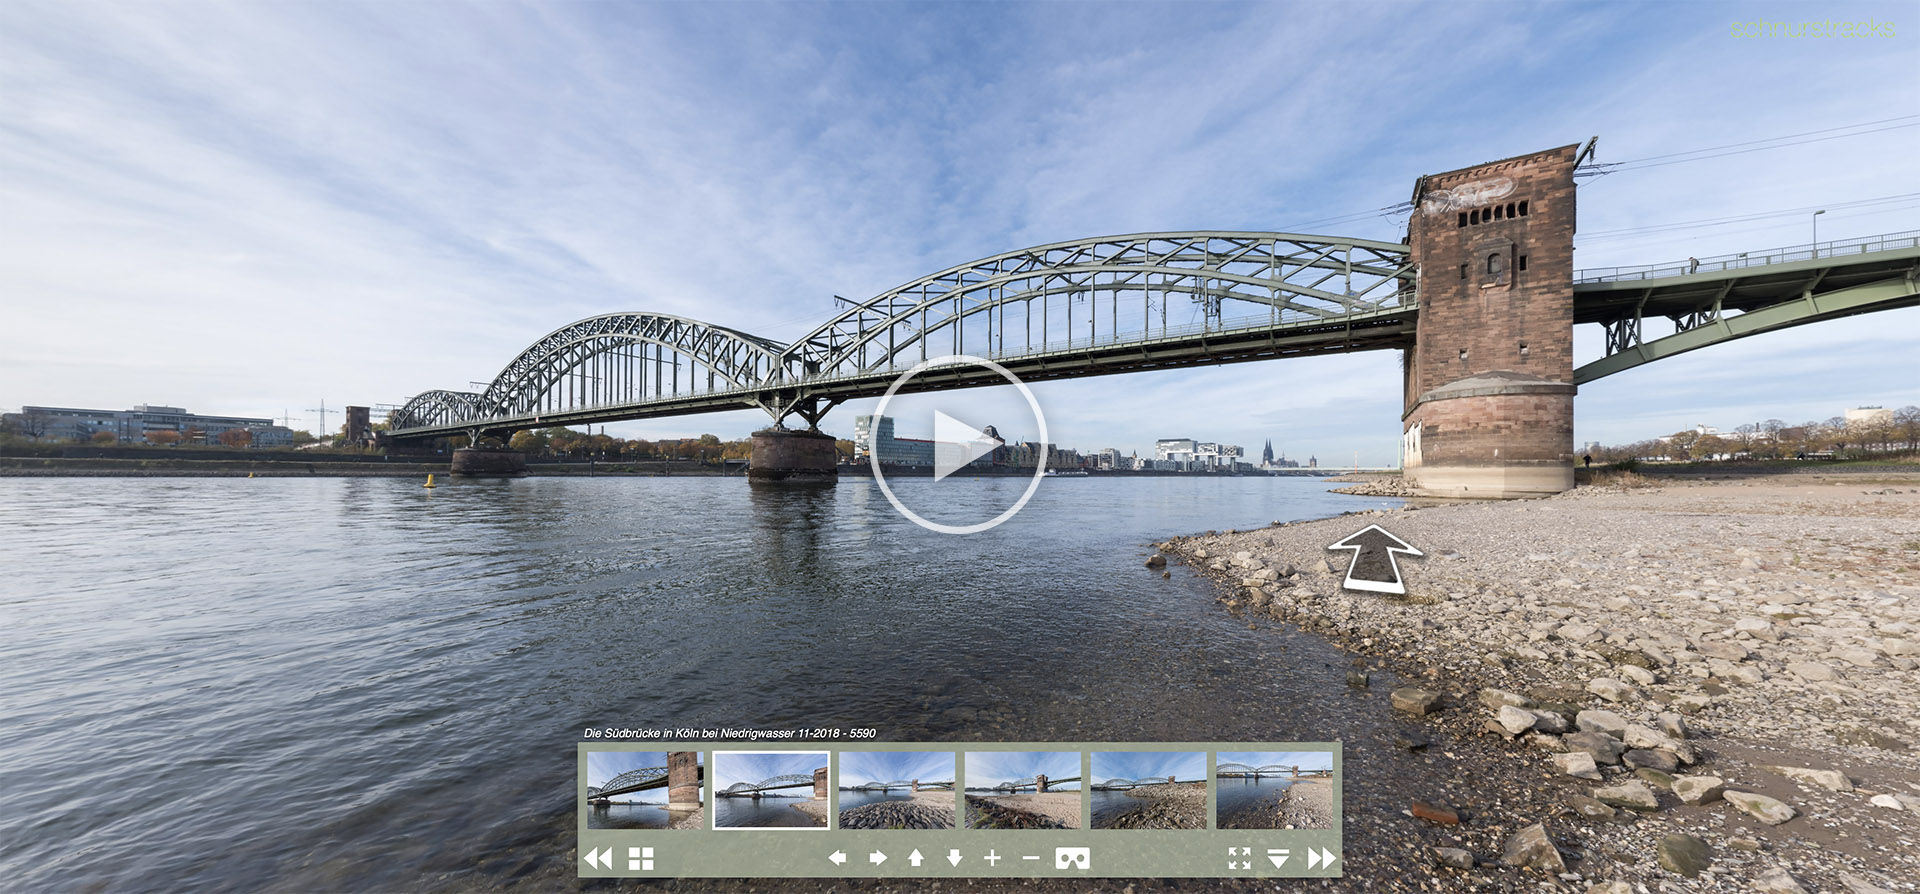 Virtuelle Tour am Rheinstrand mit Kugelpanoramen der Südbrücke in Köln | 11.2018